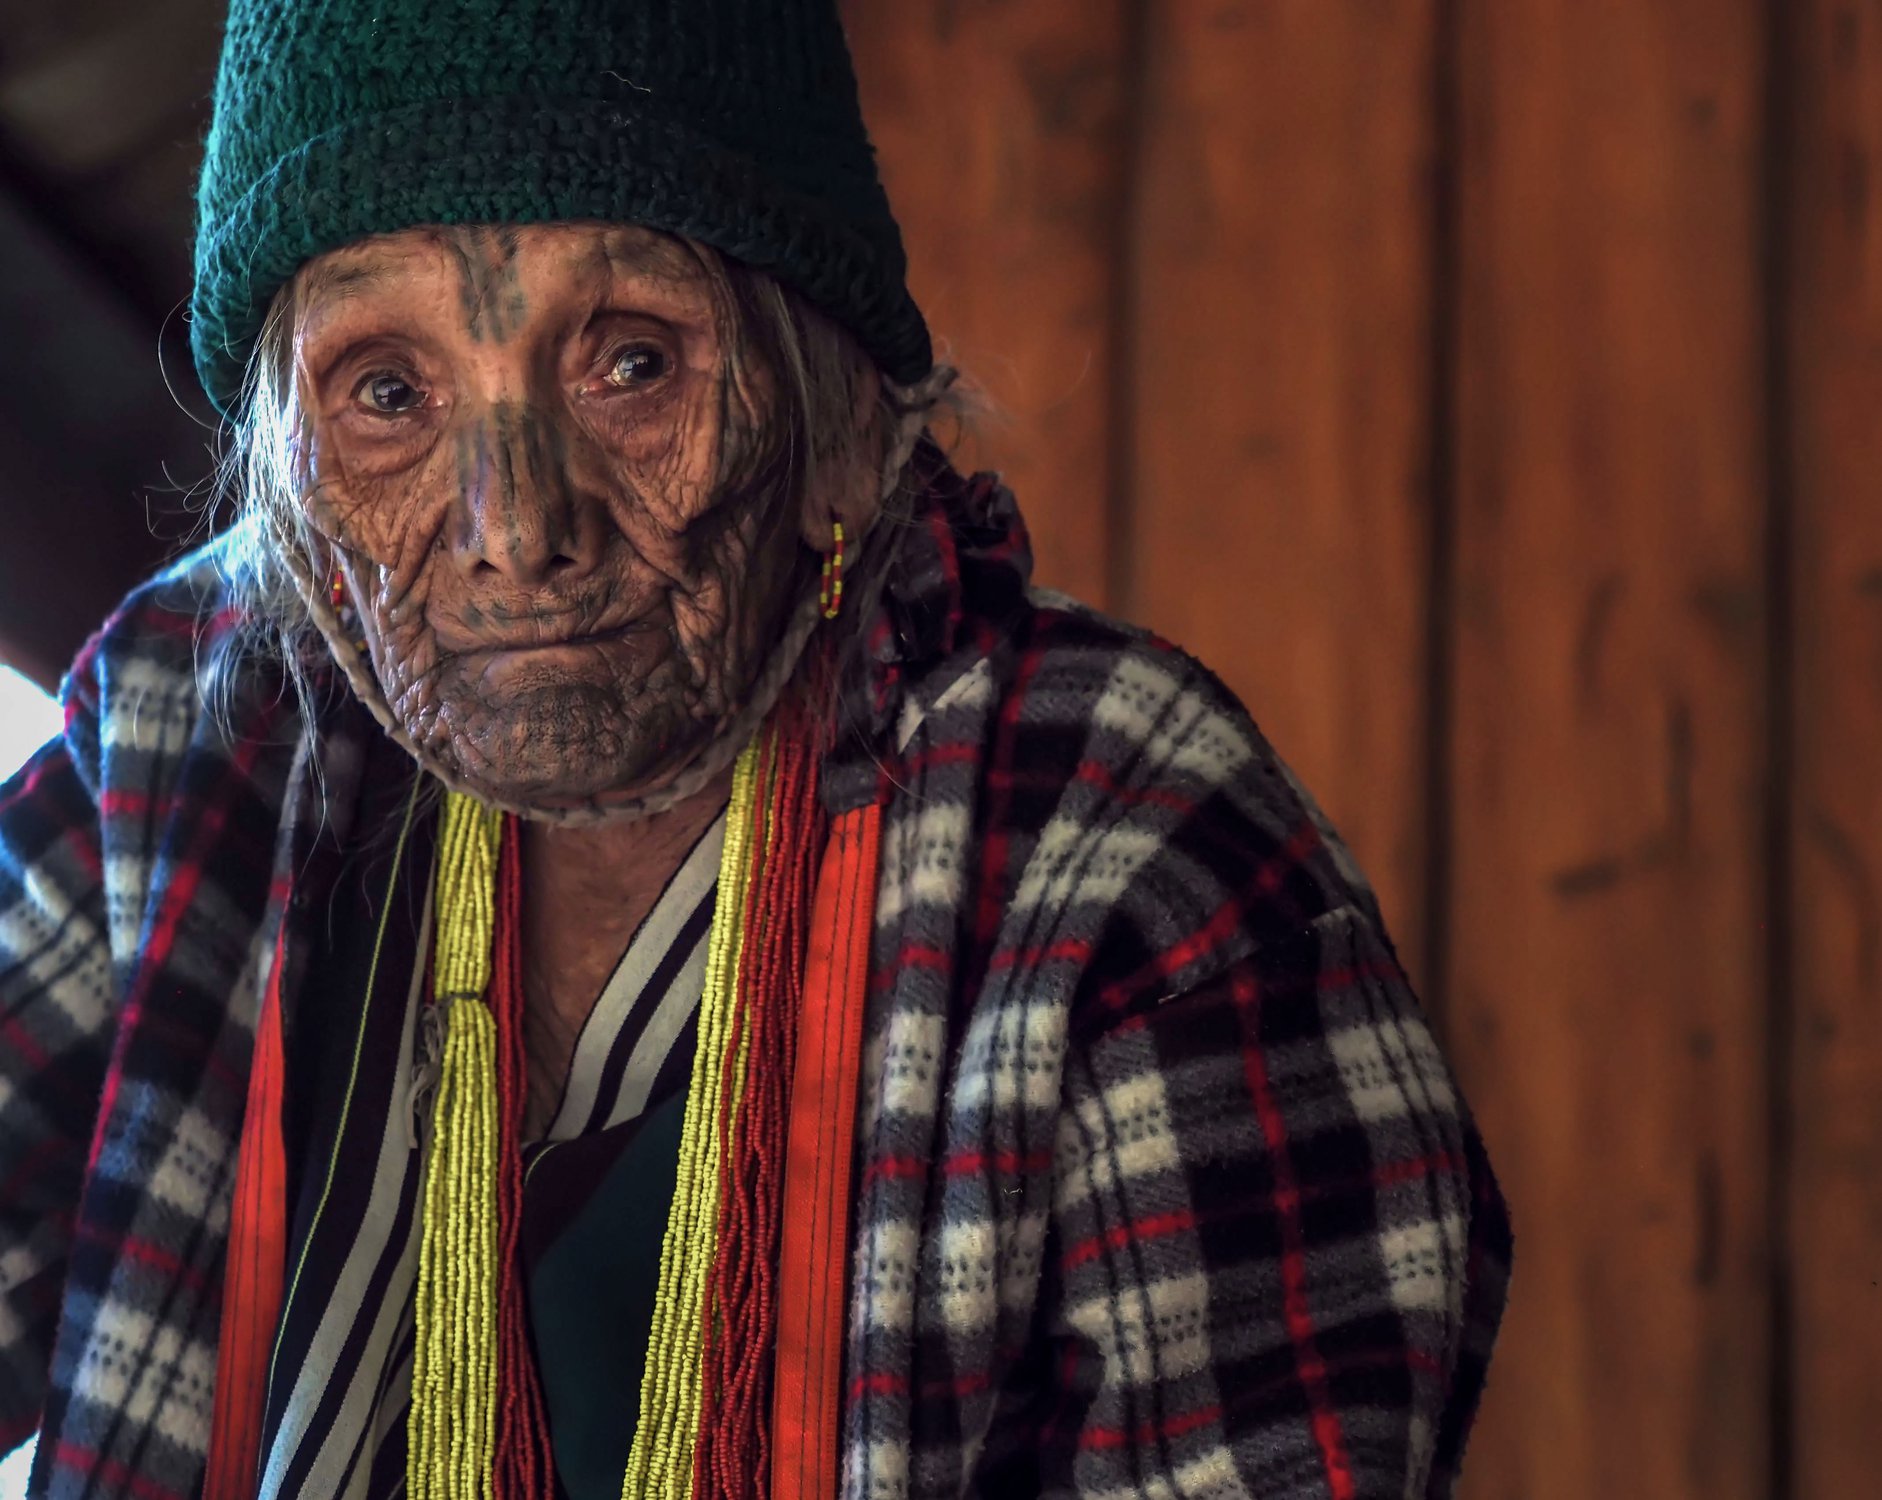 Пожилая женщина с традиционным тату, Мьянма, штат Чин